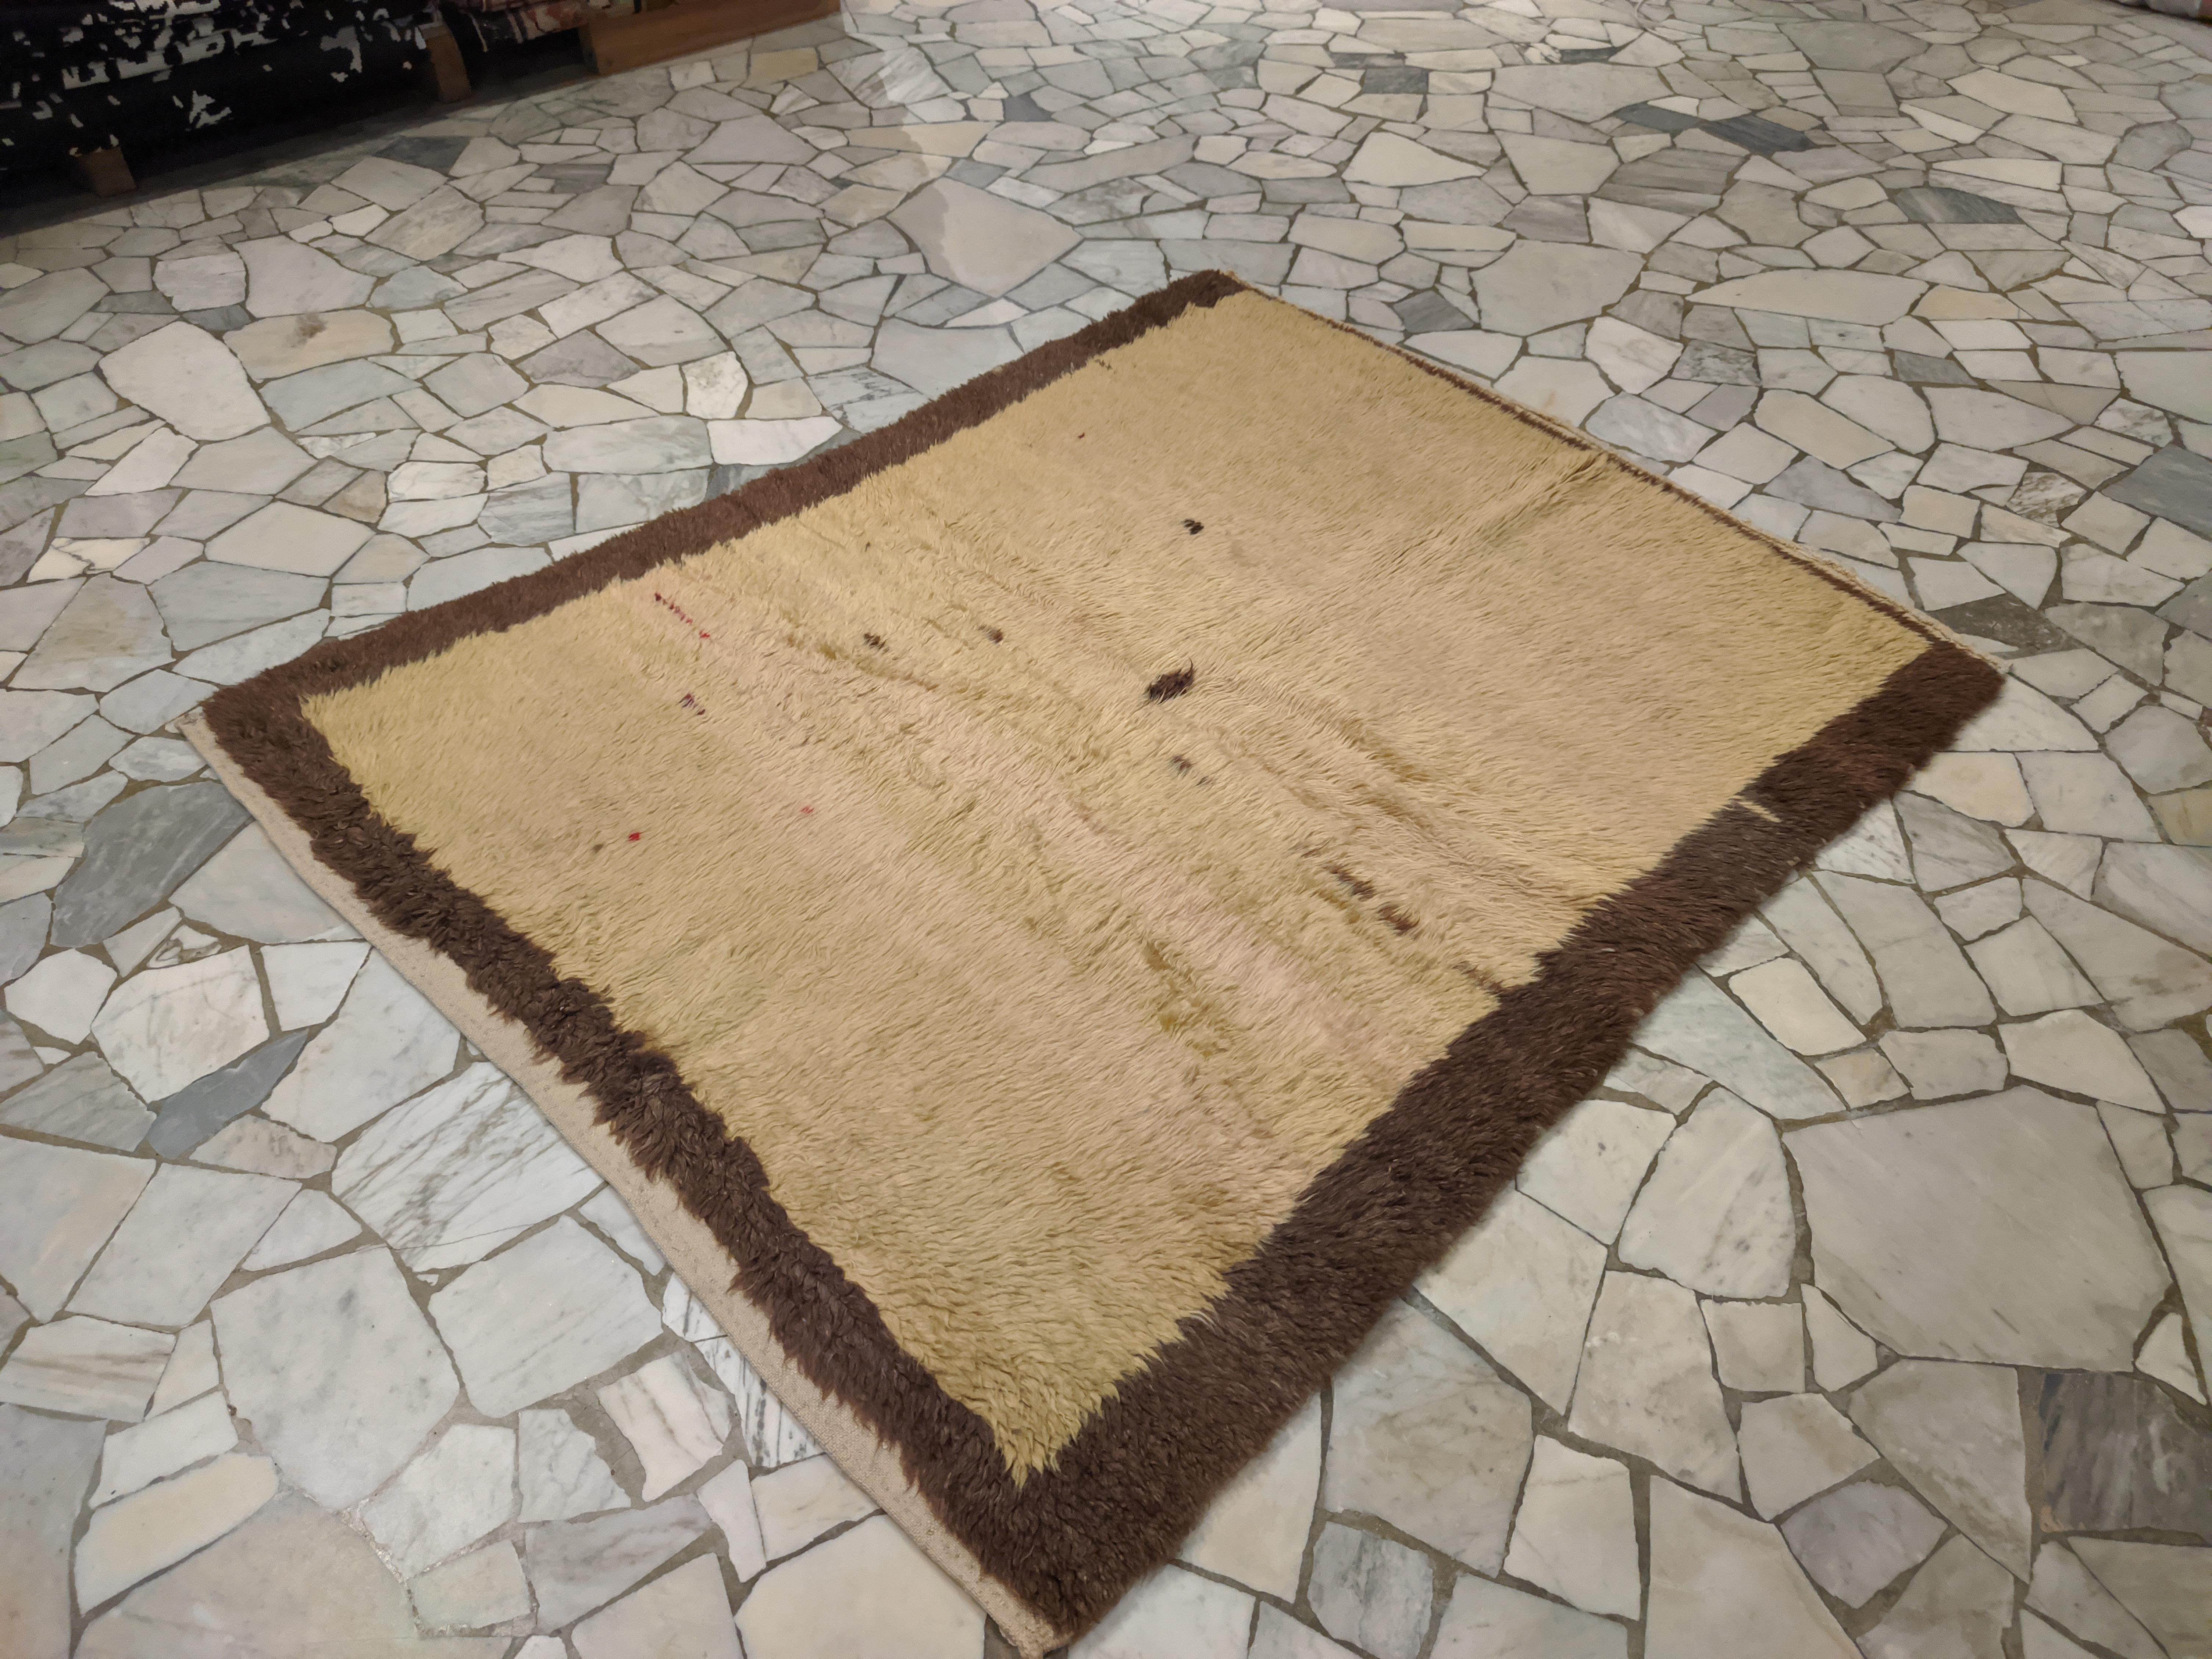 Dieser Tulu zeichnet sich durch ein für Yatak-Teppiche typisches quadratisches Format aus und hat einen weichen, cremegelben Hintergrund, der nach dem Zufallsprinzip von kleinen Punkten und einem größeren Punkt in der Mitte unterbrochen wird.